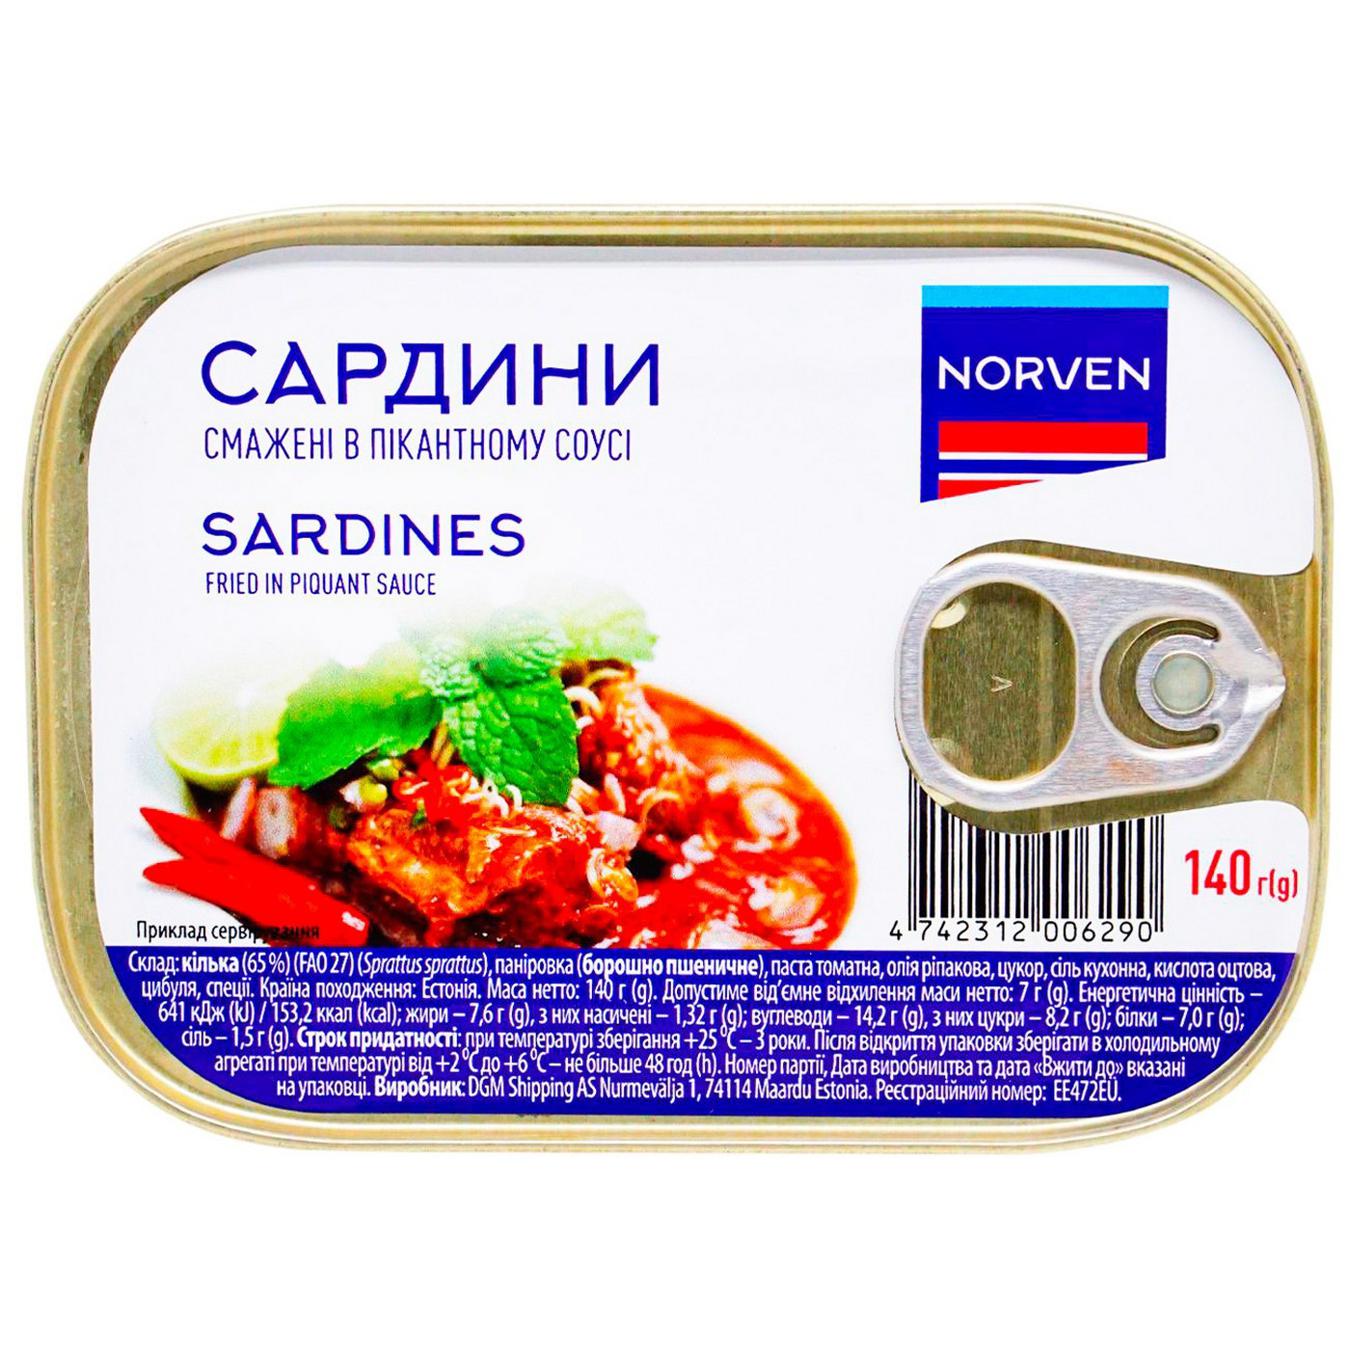 Norven sardines in spicy sauce 140g